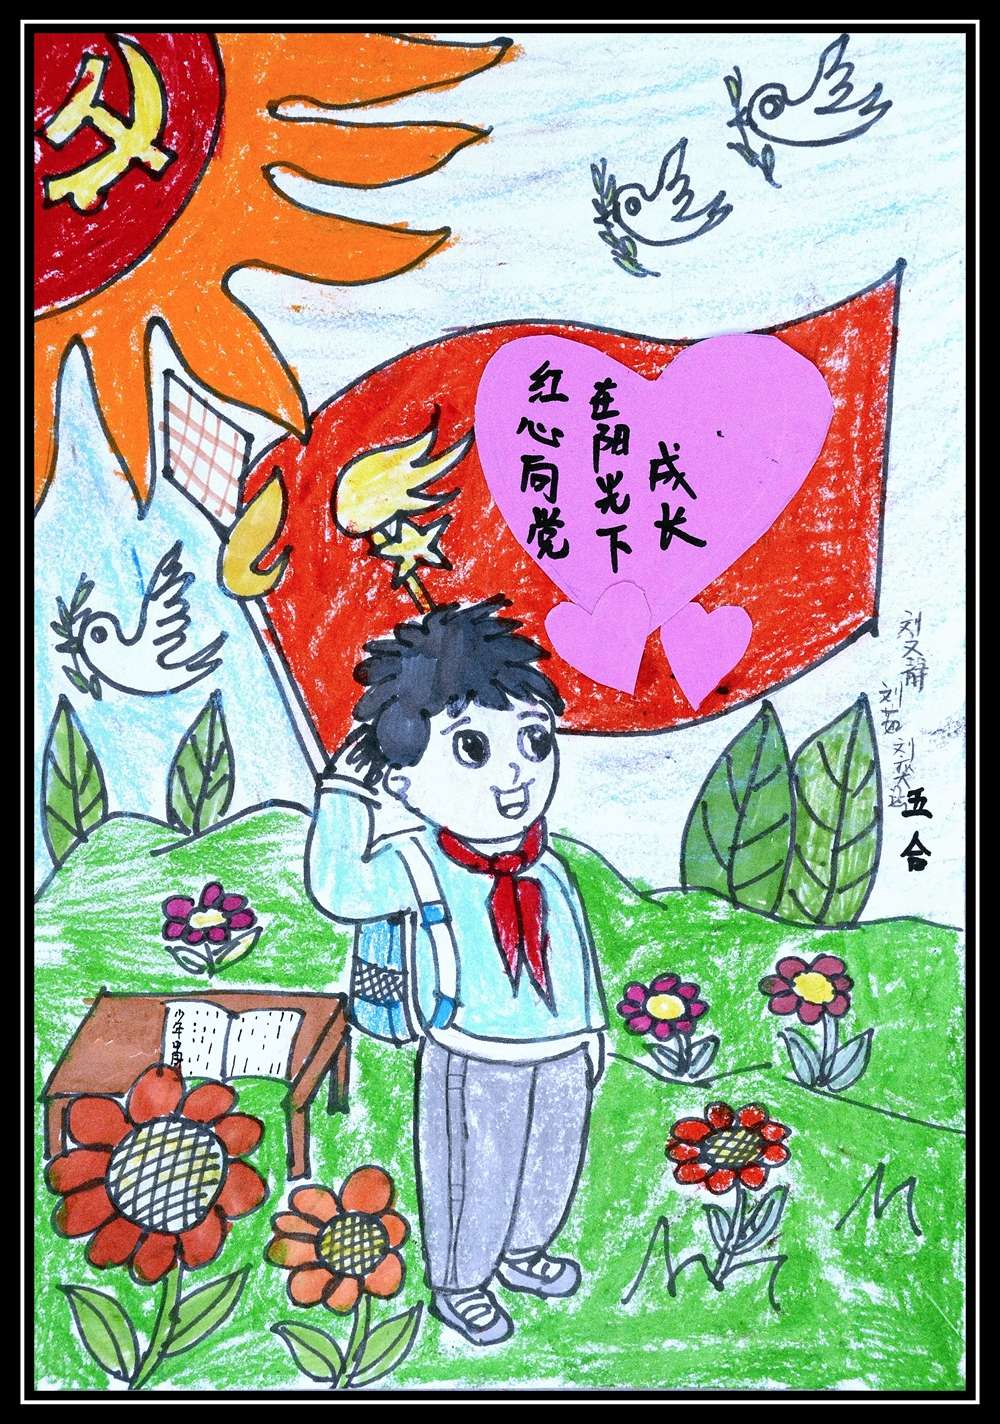 菏泽农村小学生用画笔表达对党和祖国的热爱